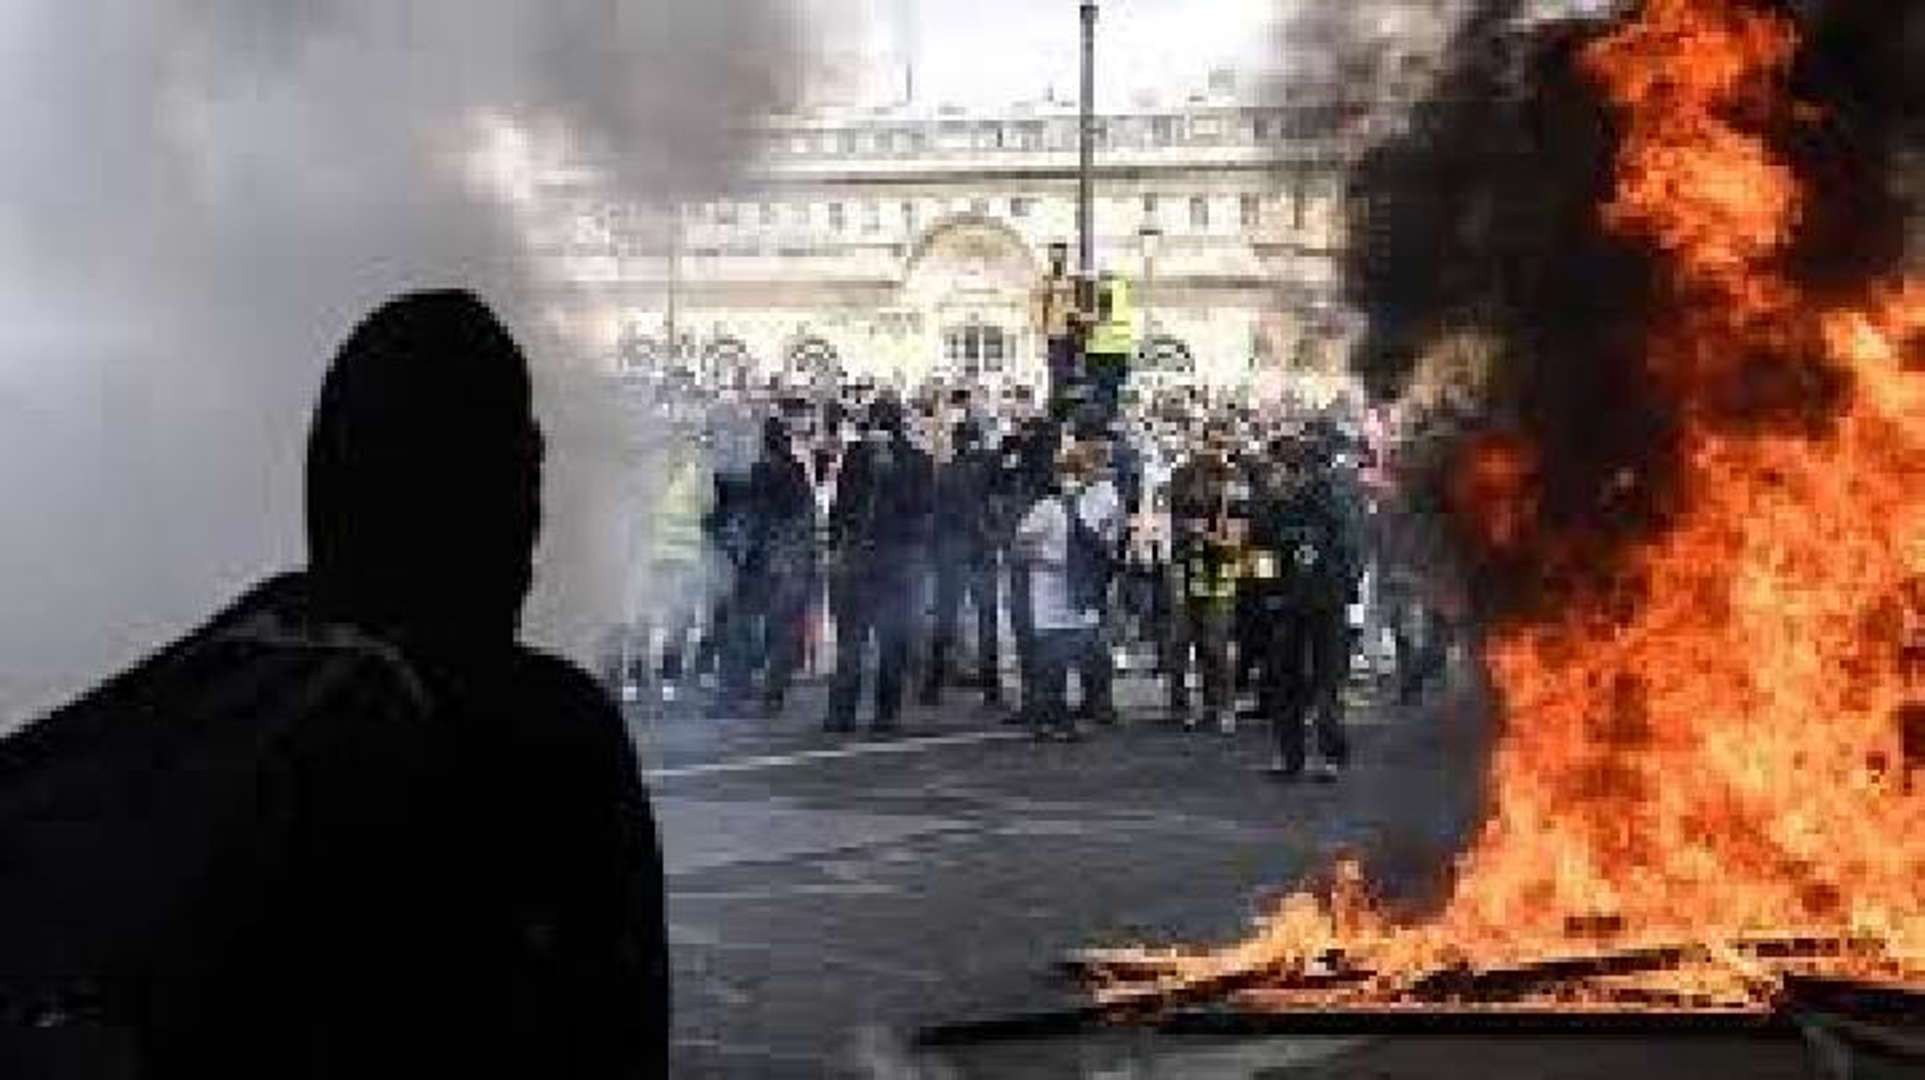 Protes nasional yang menentang reformasi pensiun Presiden Emmanuel Macron berujung rusuh. (Foto: afp)